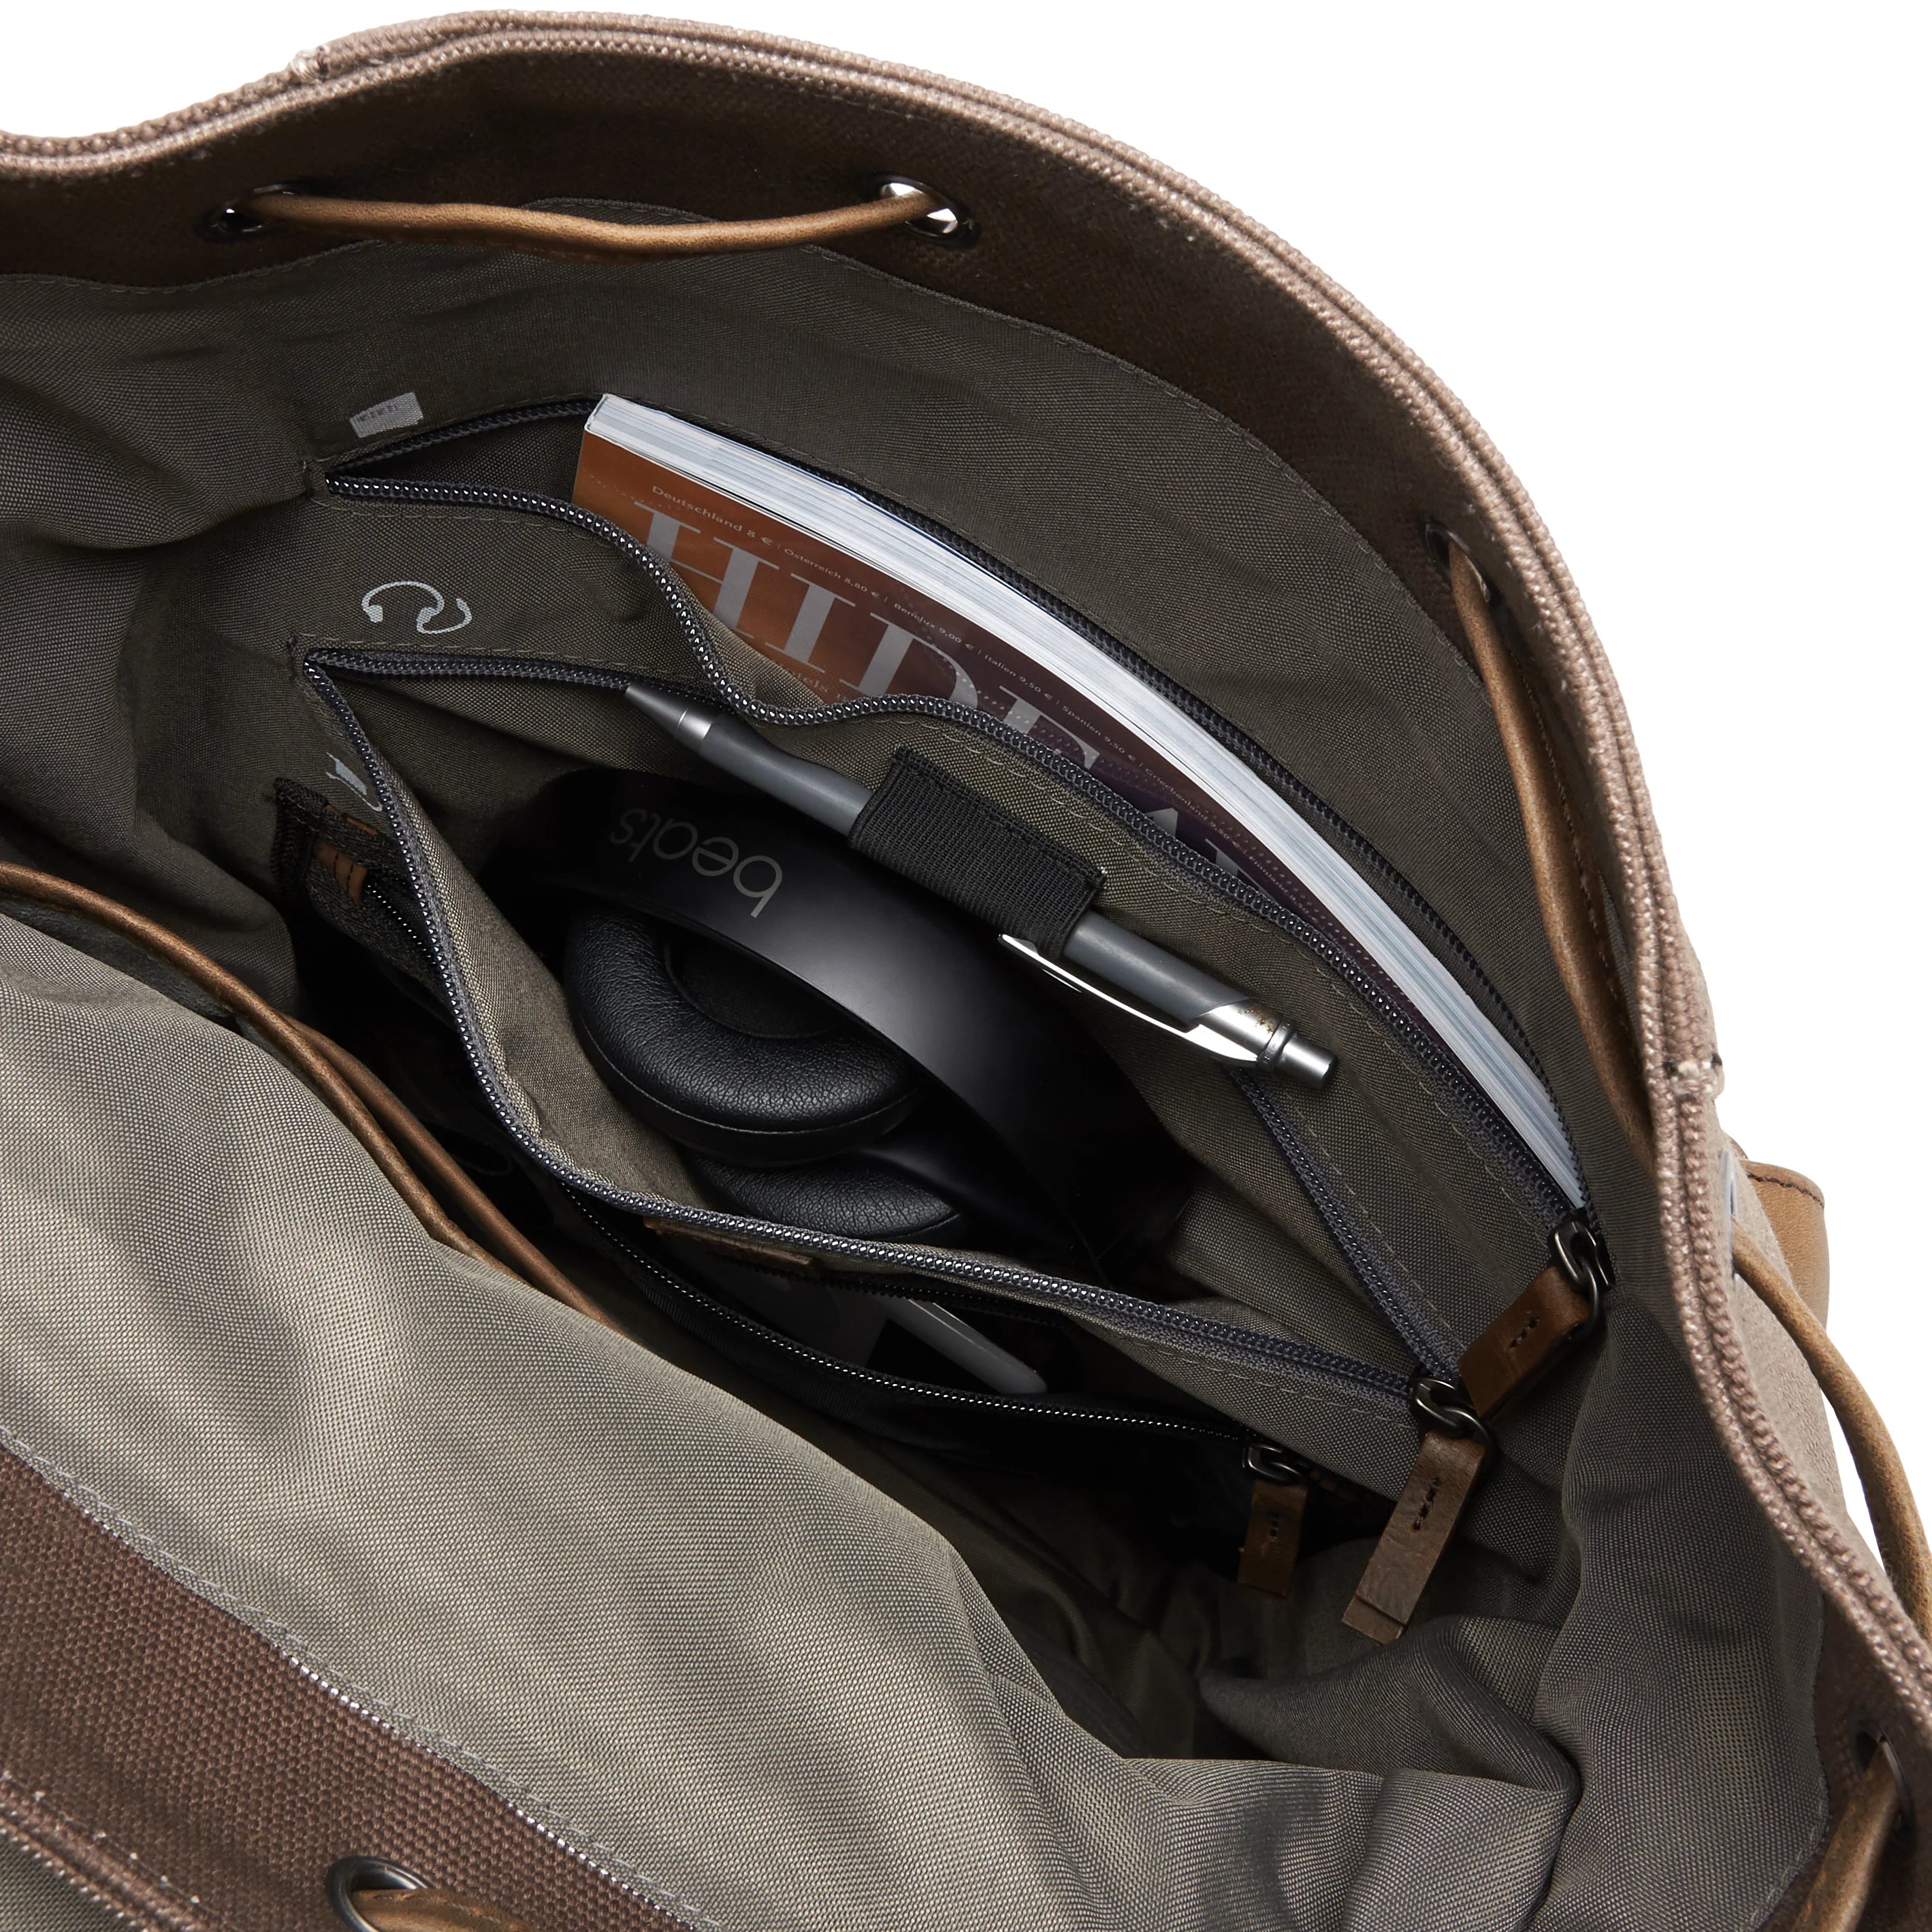 Jost Salo Beutel-Rucksack mit Laptopfach 45 cm - schwarz